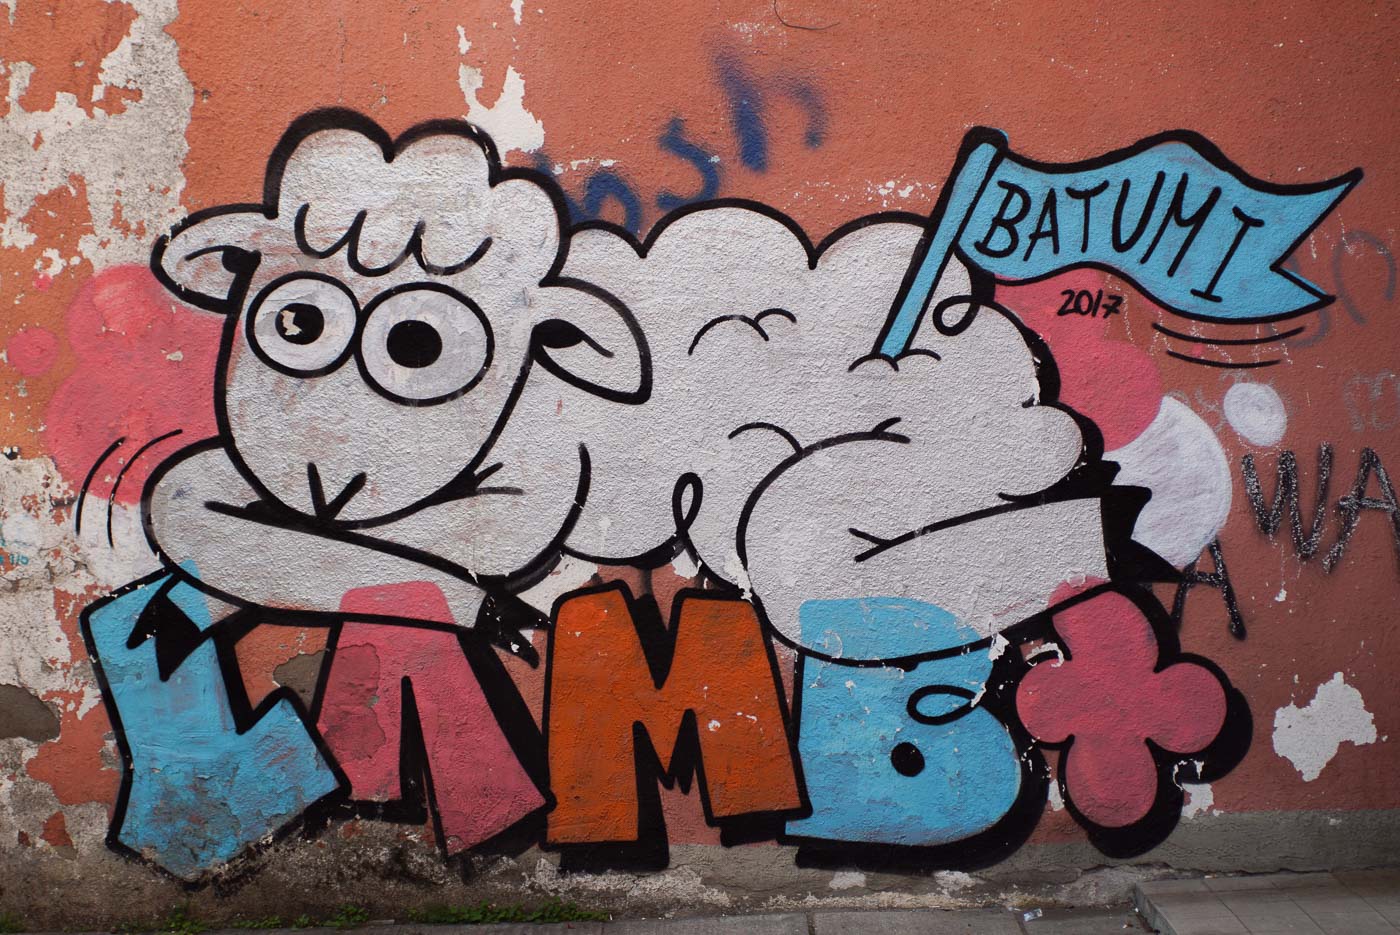 Zu sehen ist ein Graffiti Schaf das auf dem Schriftzug Lamb liegt. In dem hinteren Ende seines Felles steckt eine blaue Fahne mit der Aufschrift Batumi.